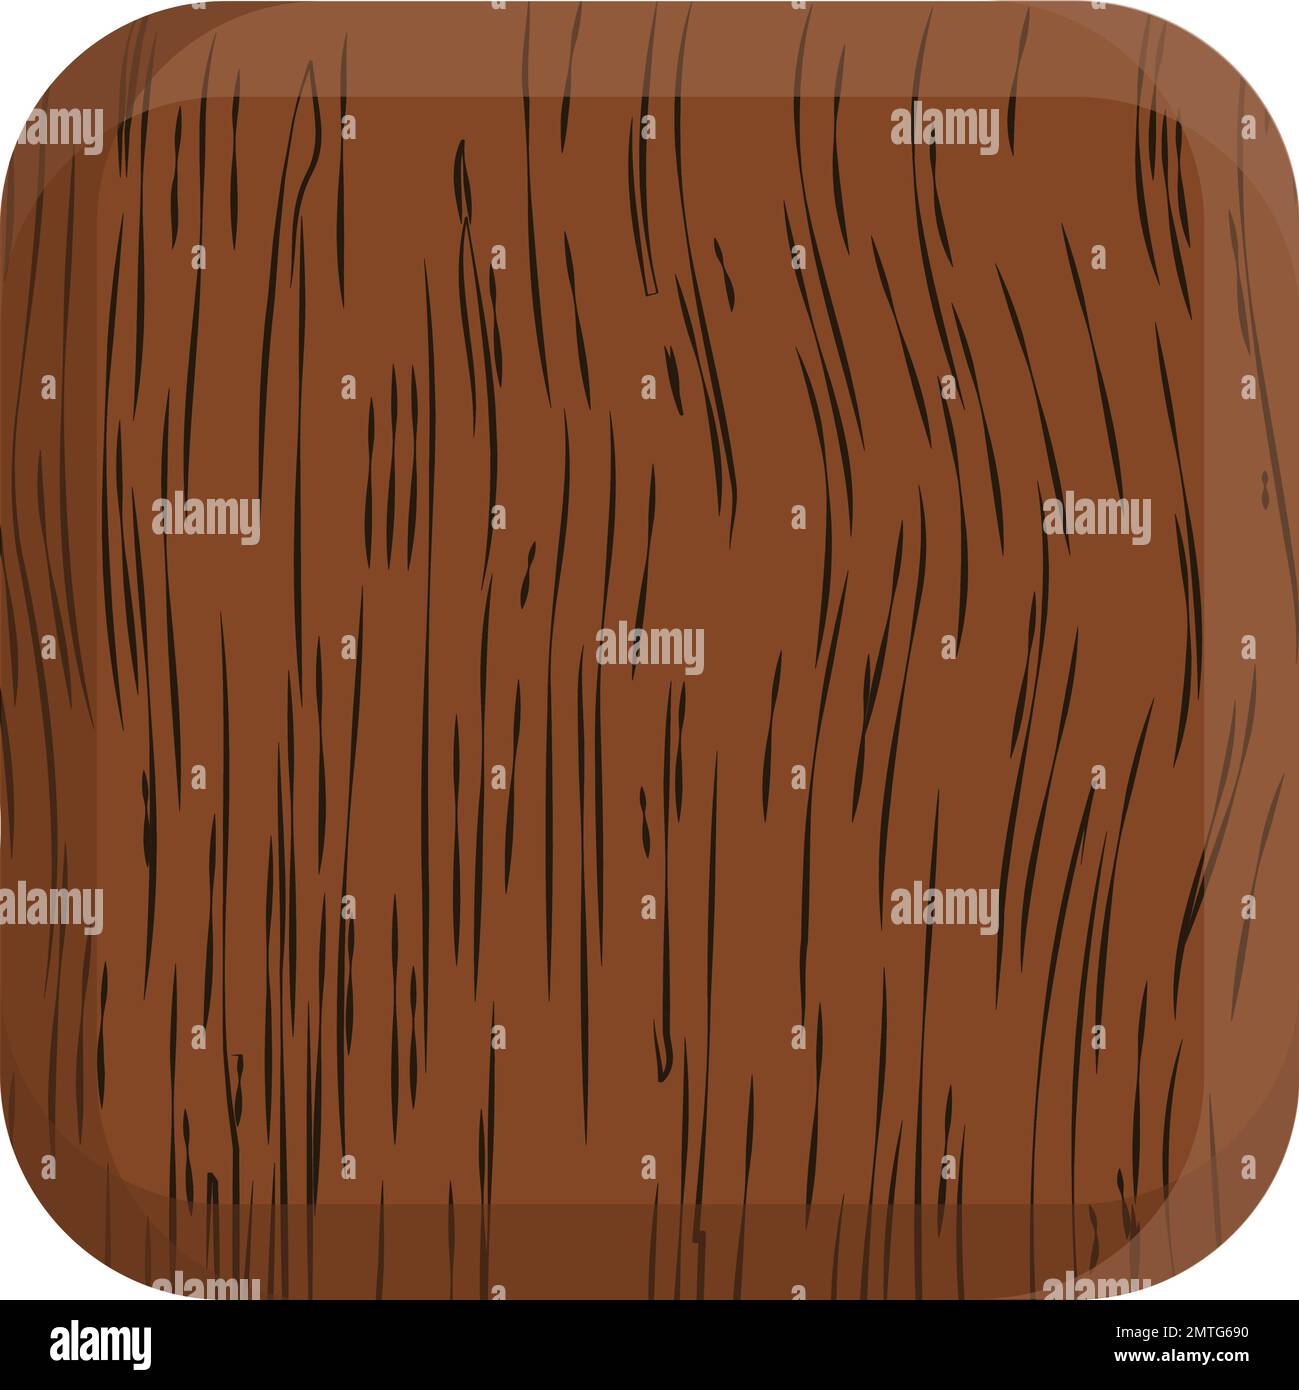 Carreaux texturés en bois de couleur chocolat Illustration de Vecteur